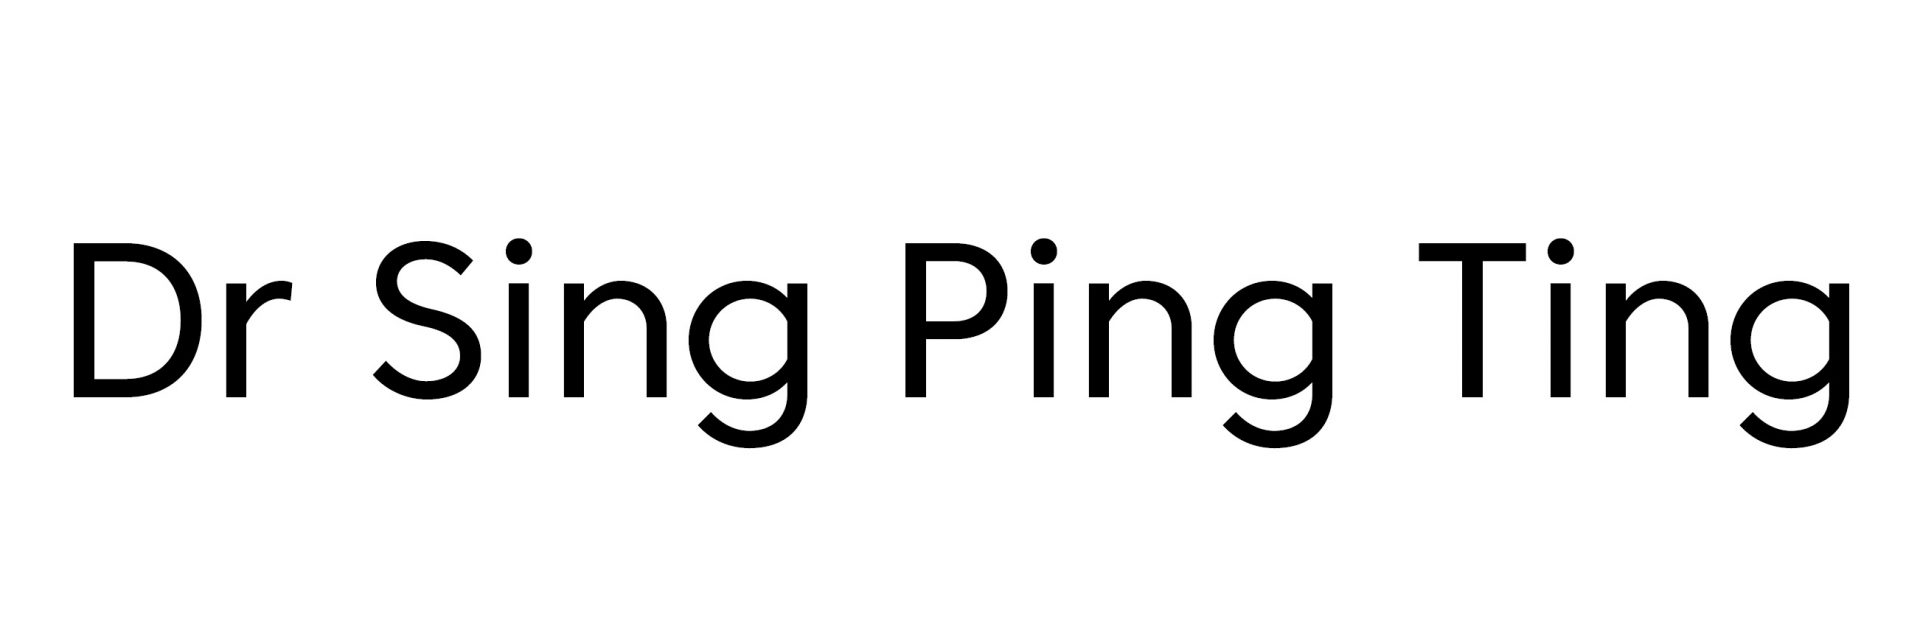 Dr Sing Ping Ting